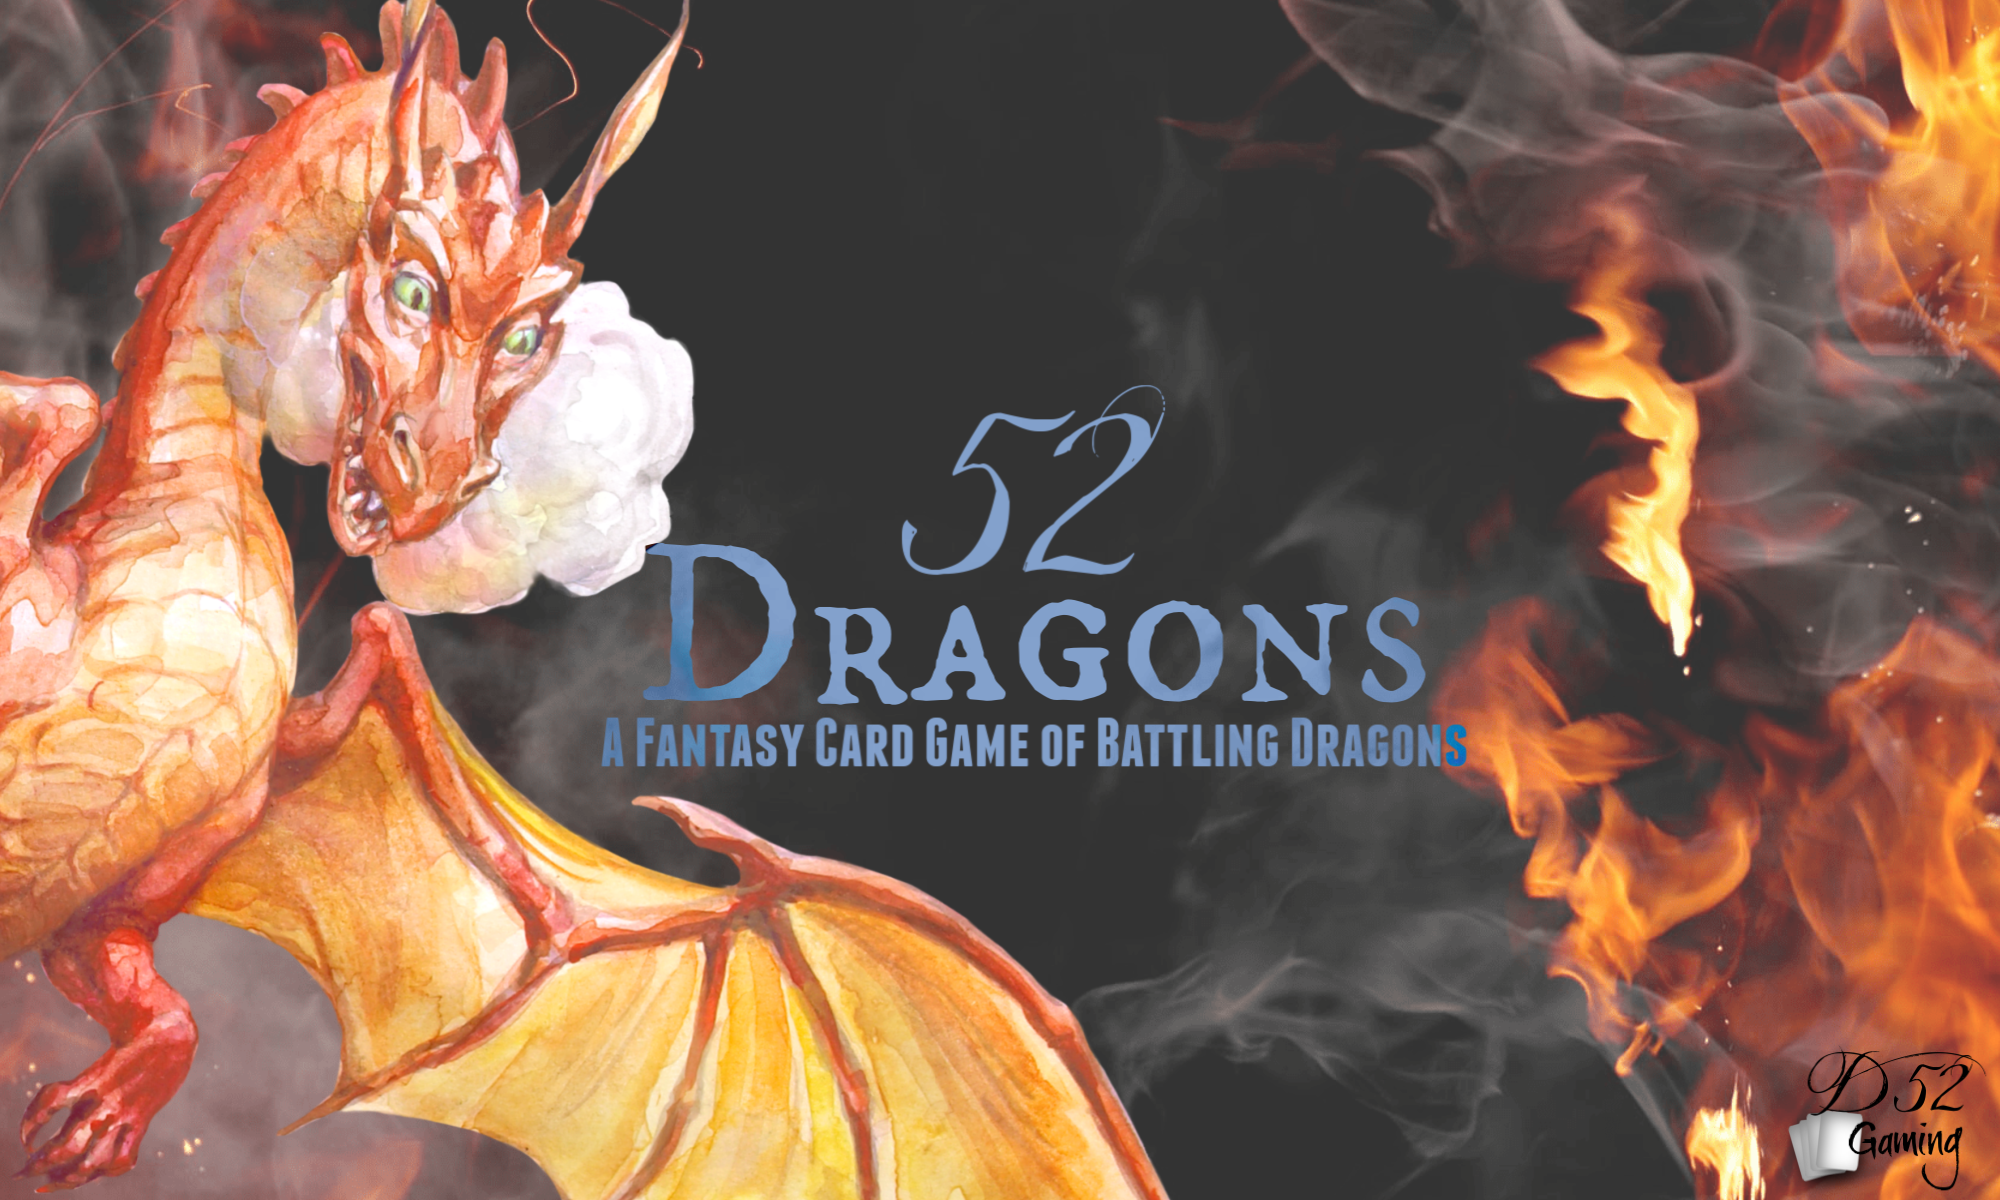 Dragon cards. Огненные драконы карта Кауфман.